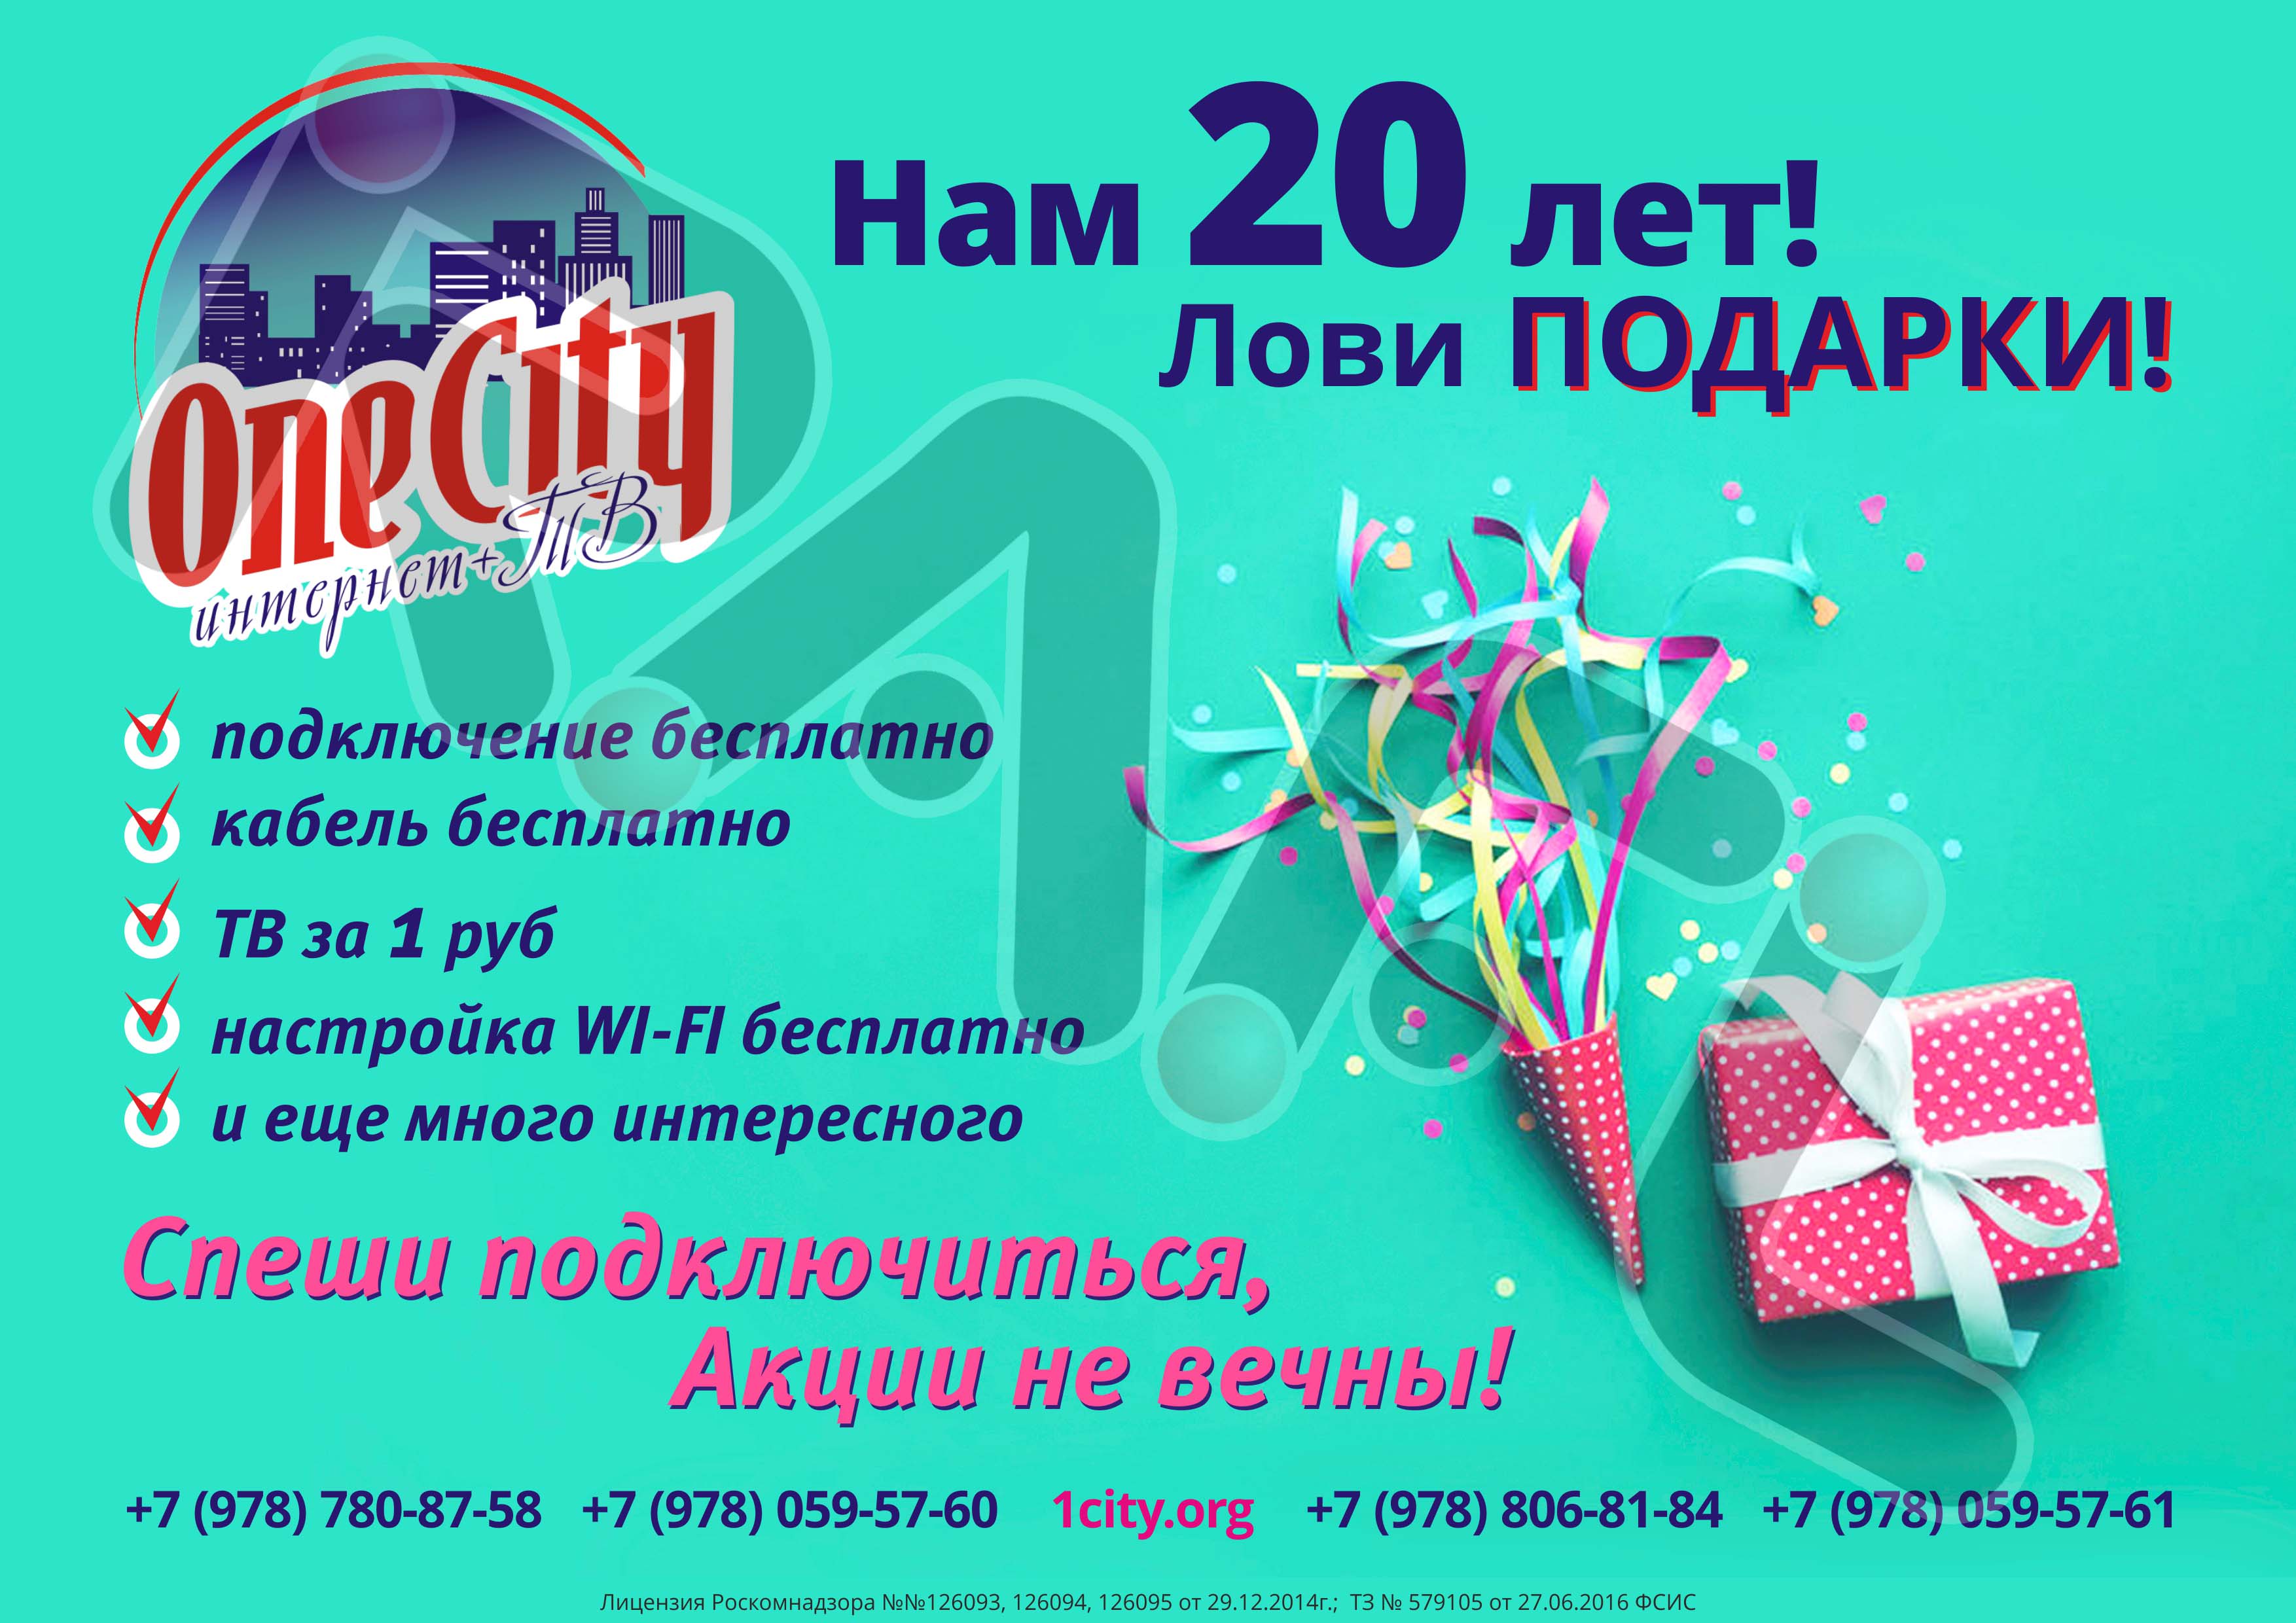 Заказчик - интернет + ТВ One City